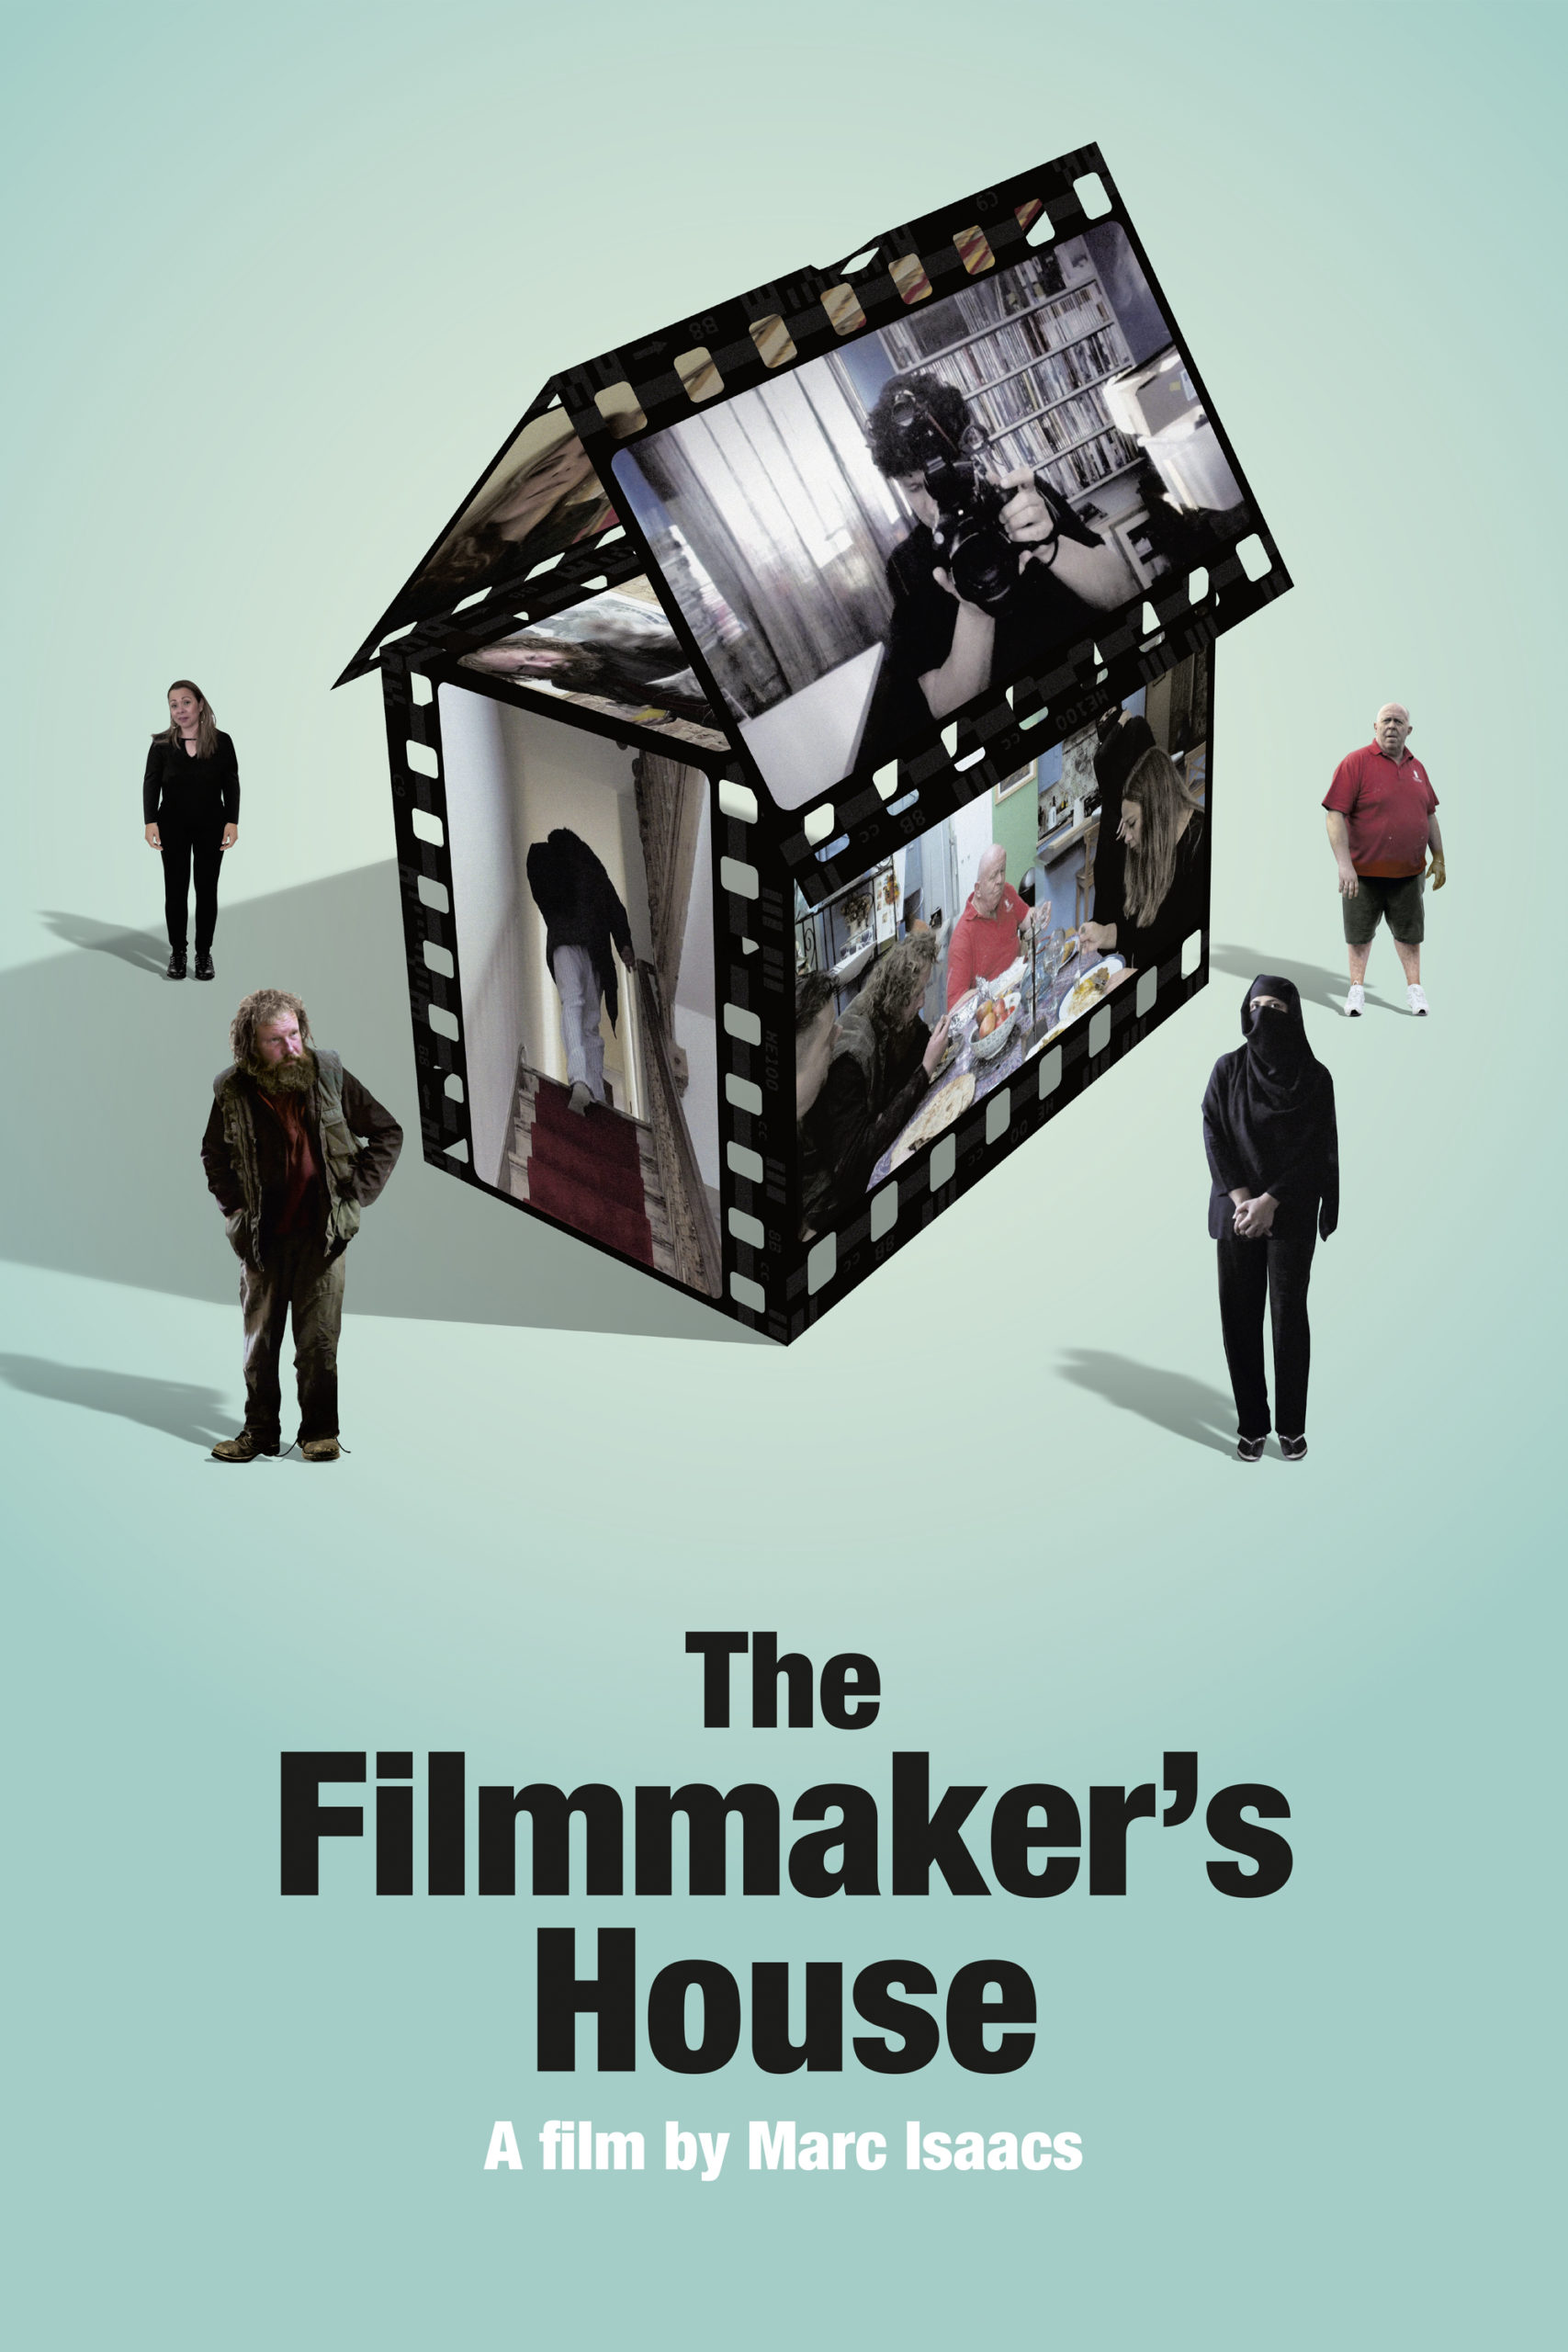 The filmmaker's house